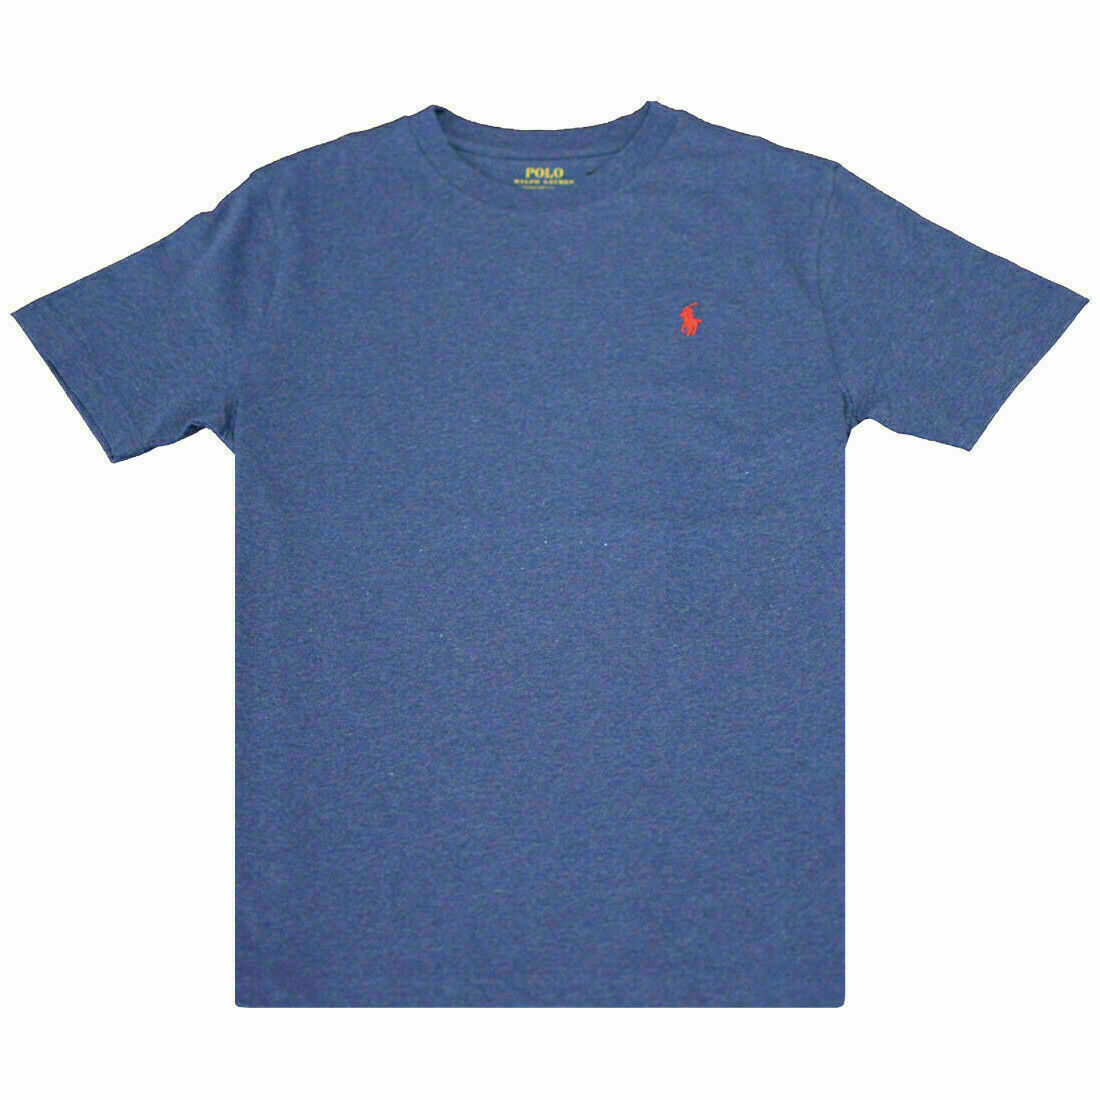 Polo Ralph Lauren Kid's Dark Pastel Blue - Red Pony Round Neck S/S T-Shirt (S24)